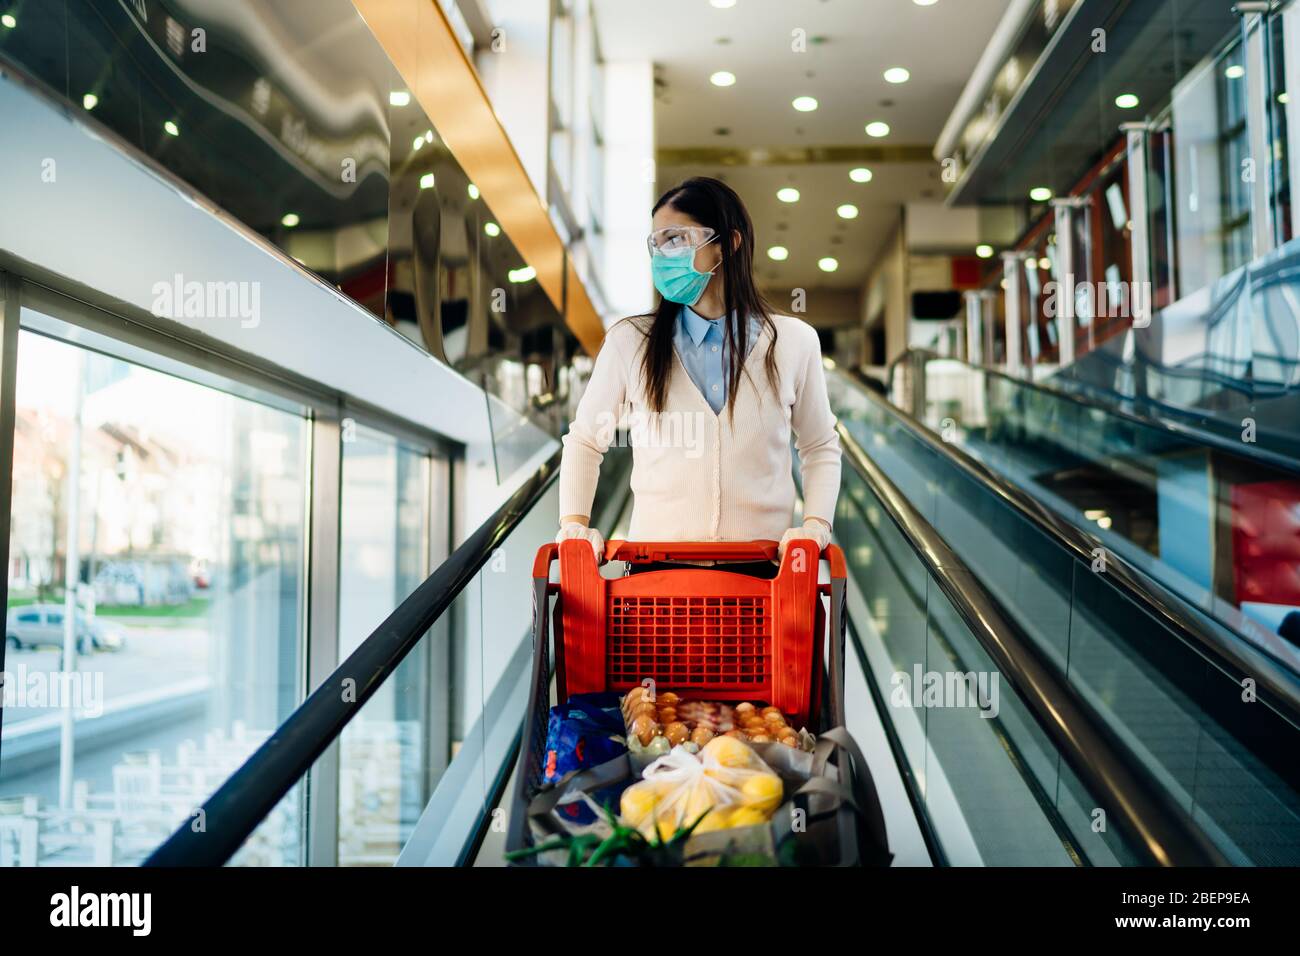 Femme portant des magasins d'épicerie masque dans un supermarché, chariot de poussée.Achat et hoarding de panique alimentaire.Covid-19 stock de quarantaine avec panier.sus Banque D'Images